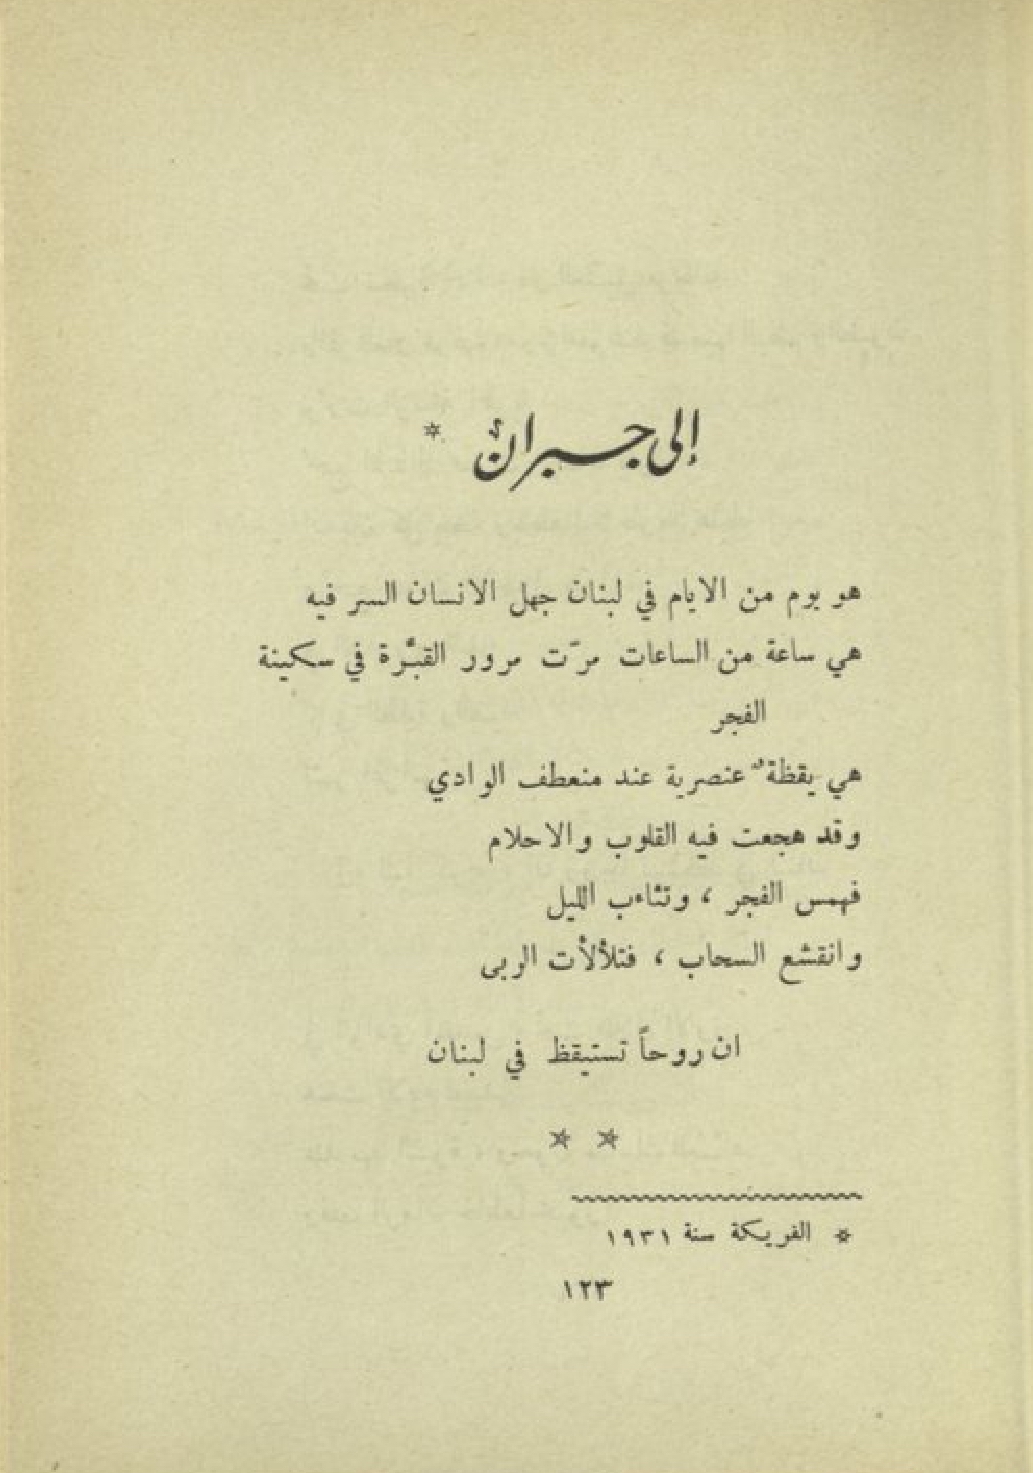 Ameen Rihani [Amīn Fāris al-Rīḥānī], Ilà Jubrān [To Gibran], Hutāf al-awdiyah: shiʻr manthūr [Hymn of the Valleys: Prose Poems], Bayrūt: Dār al-Rīḥānī lil-Ṭibāʻah wa-al-Nashr, 1955, pp. 123-136.